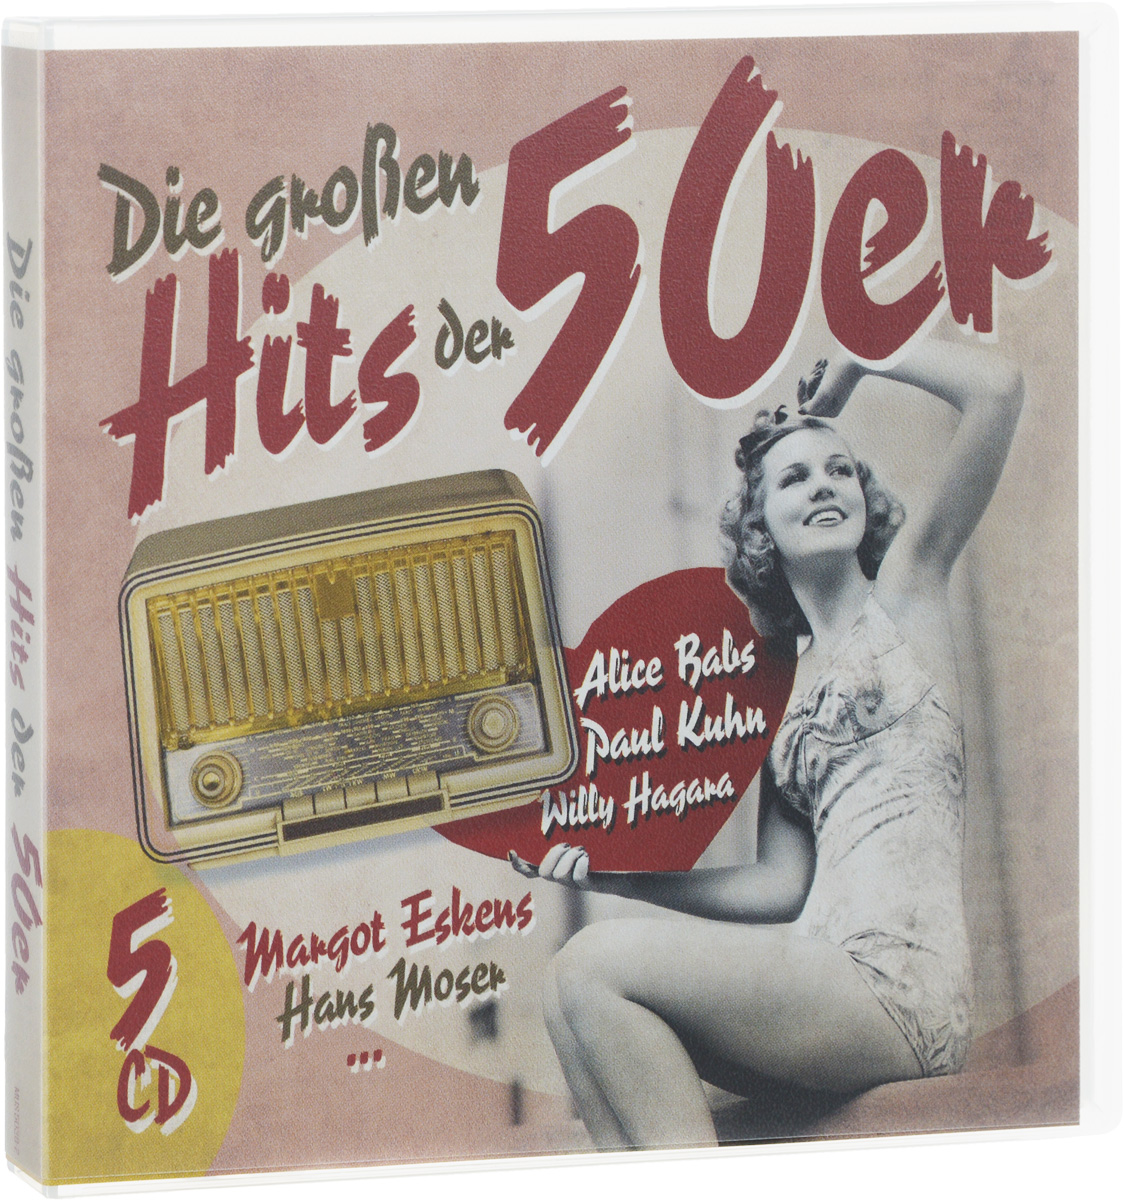 Die Grossen Hits Der 50er (5 CD)